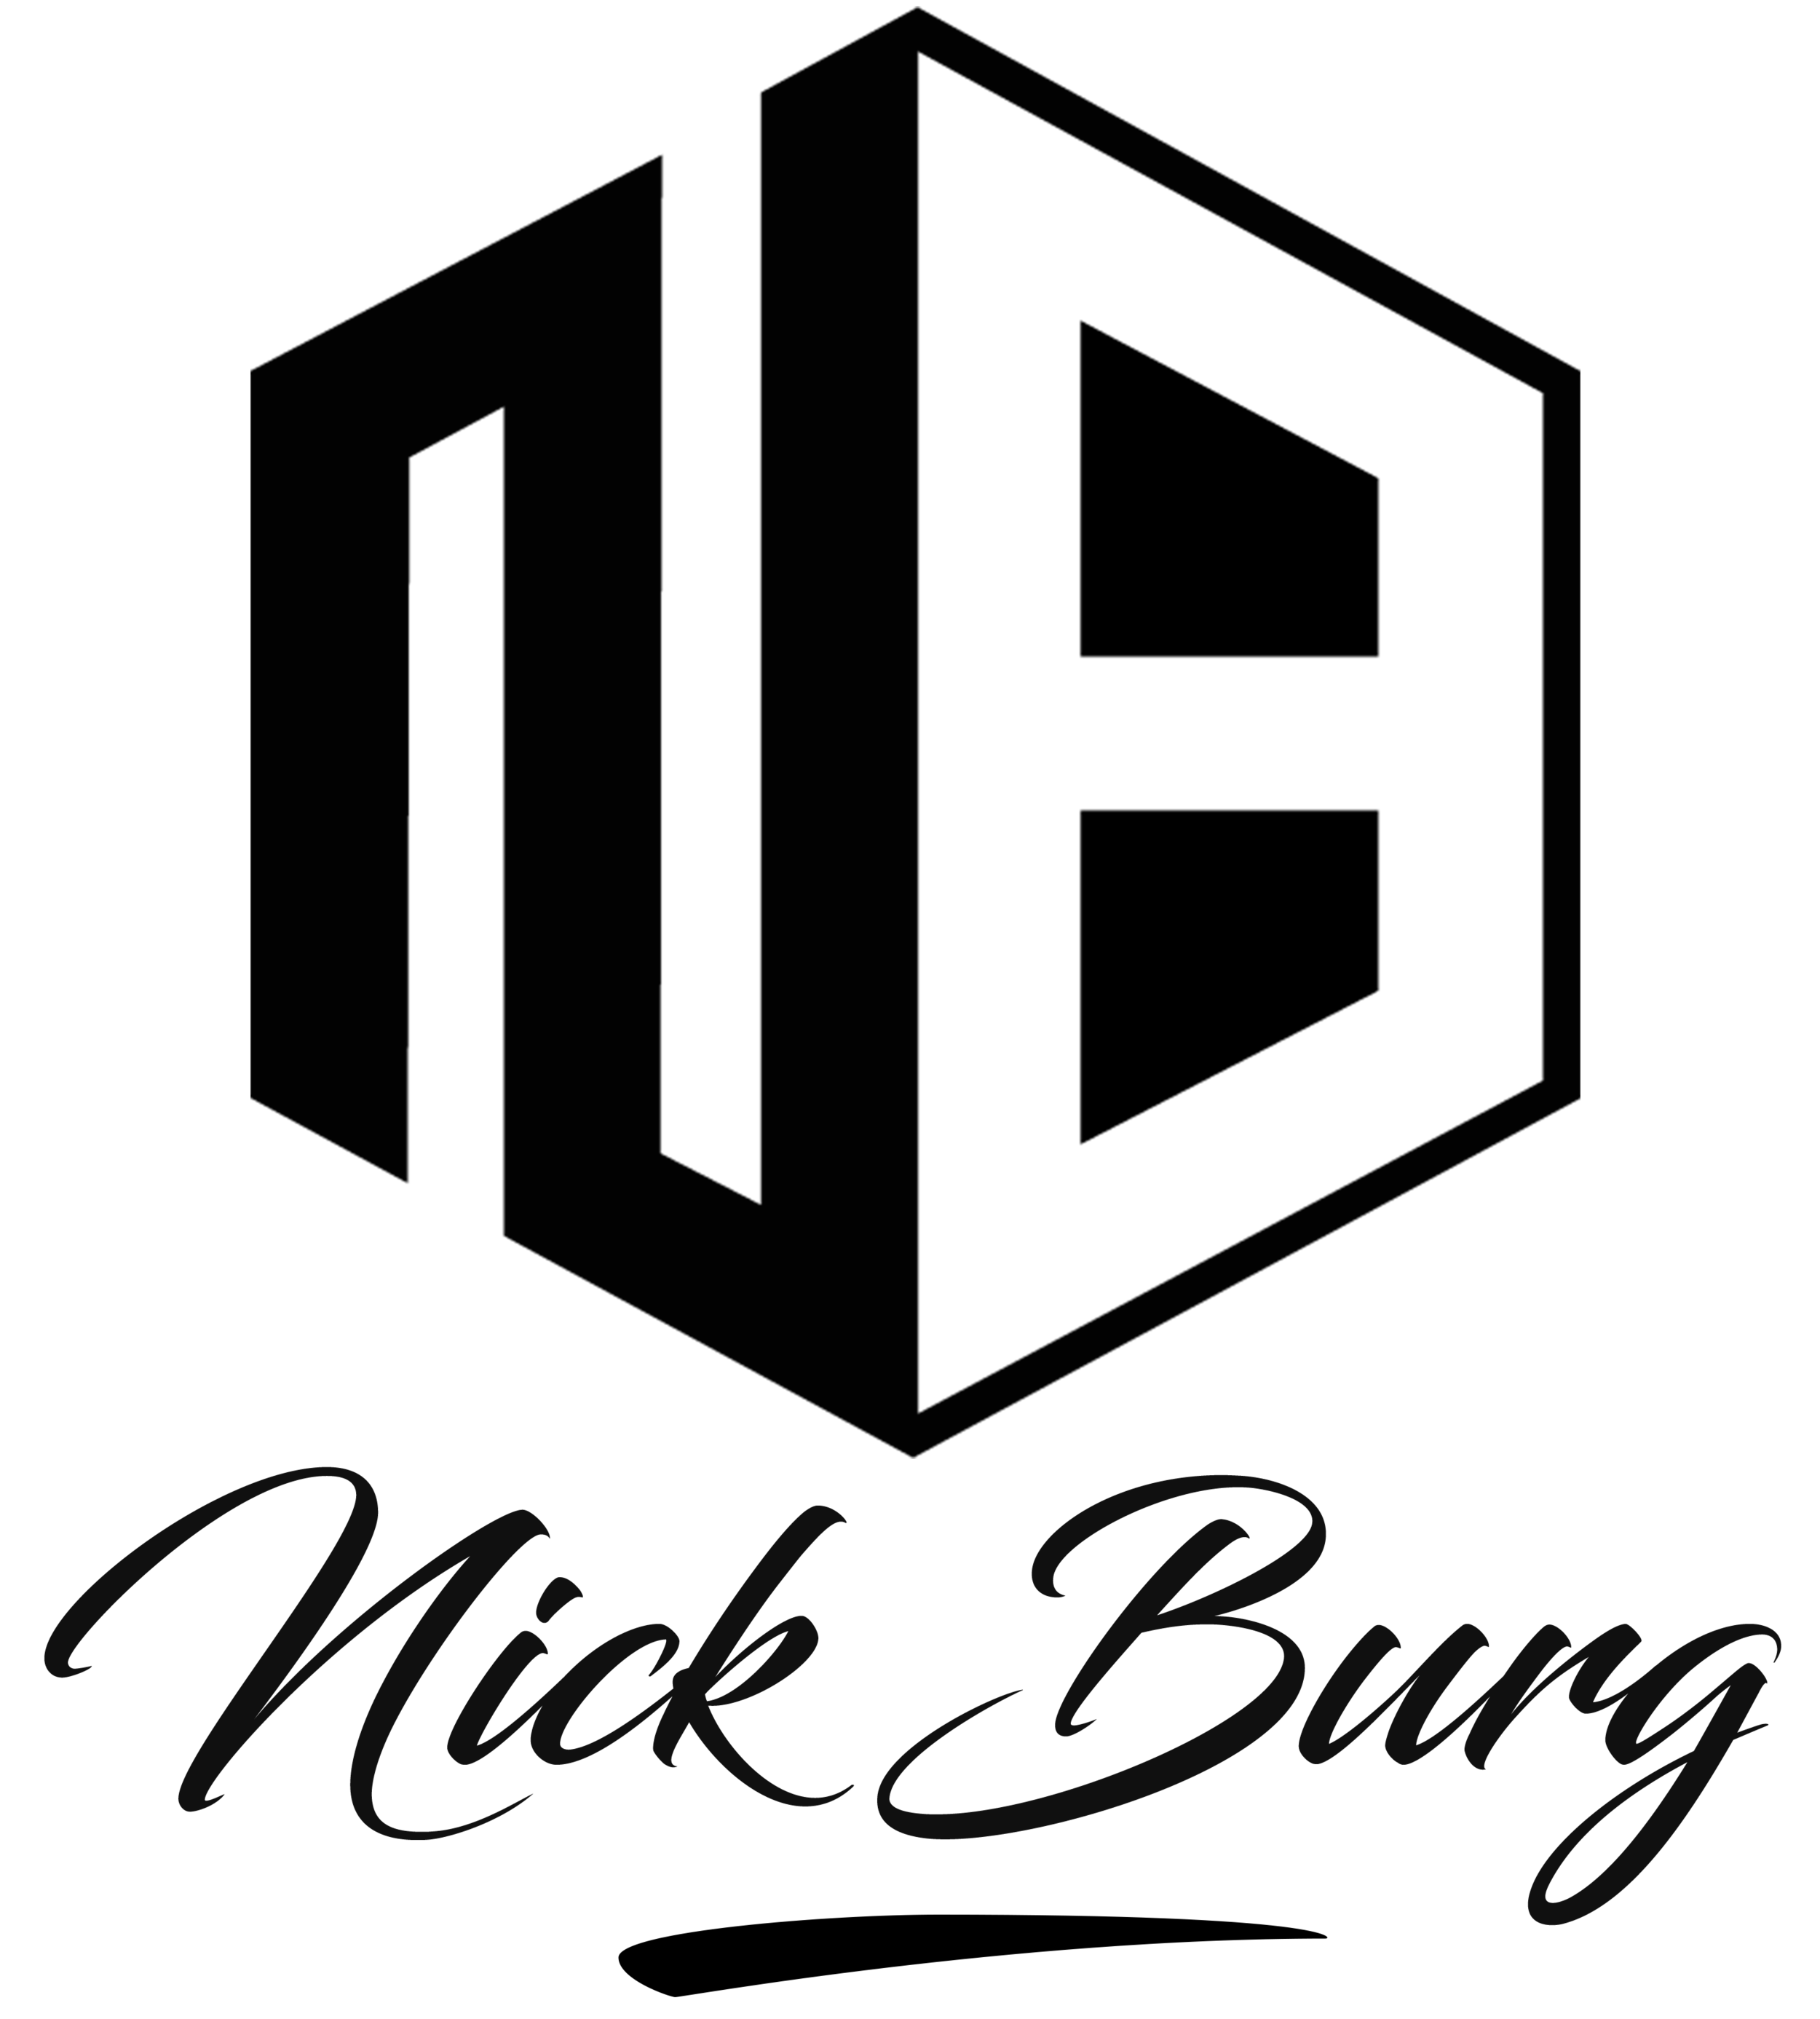 Nick Burg